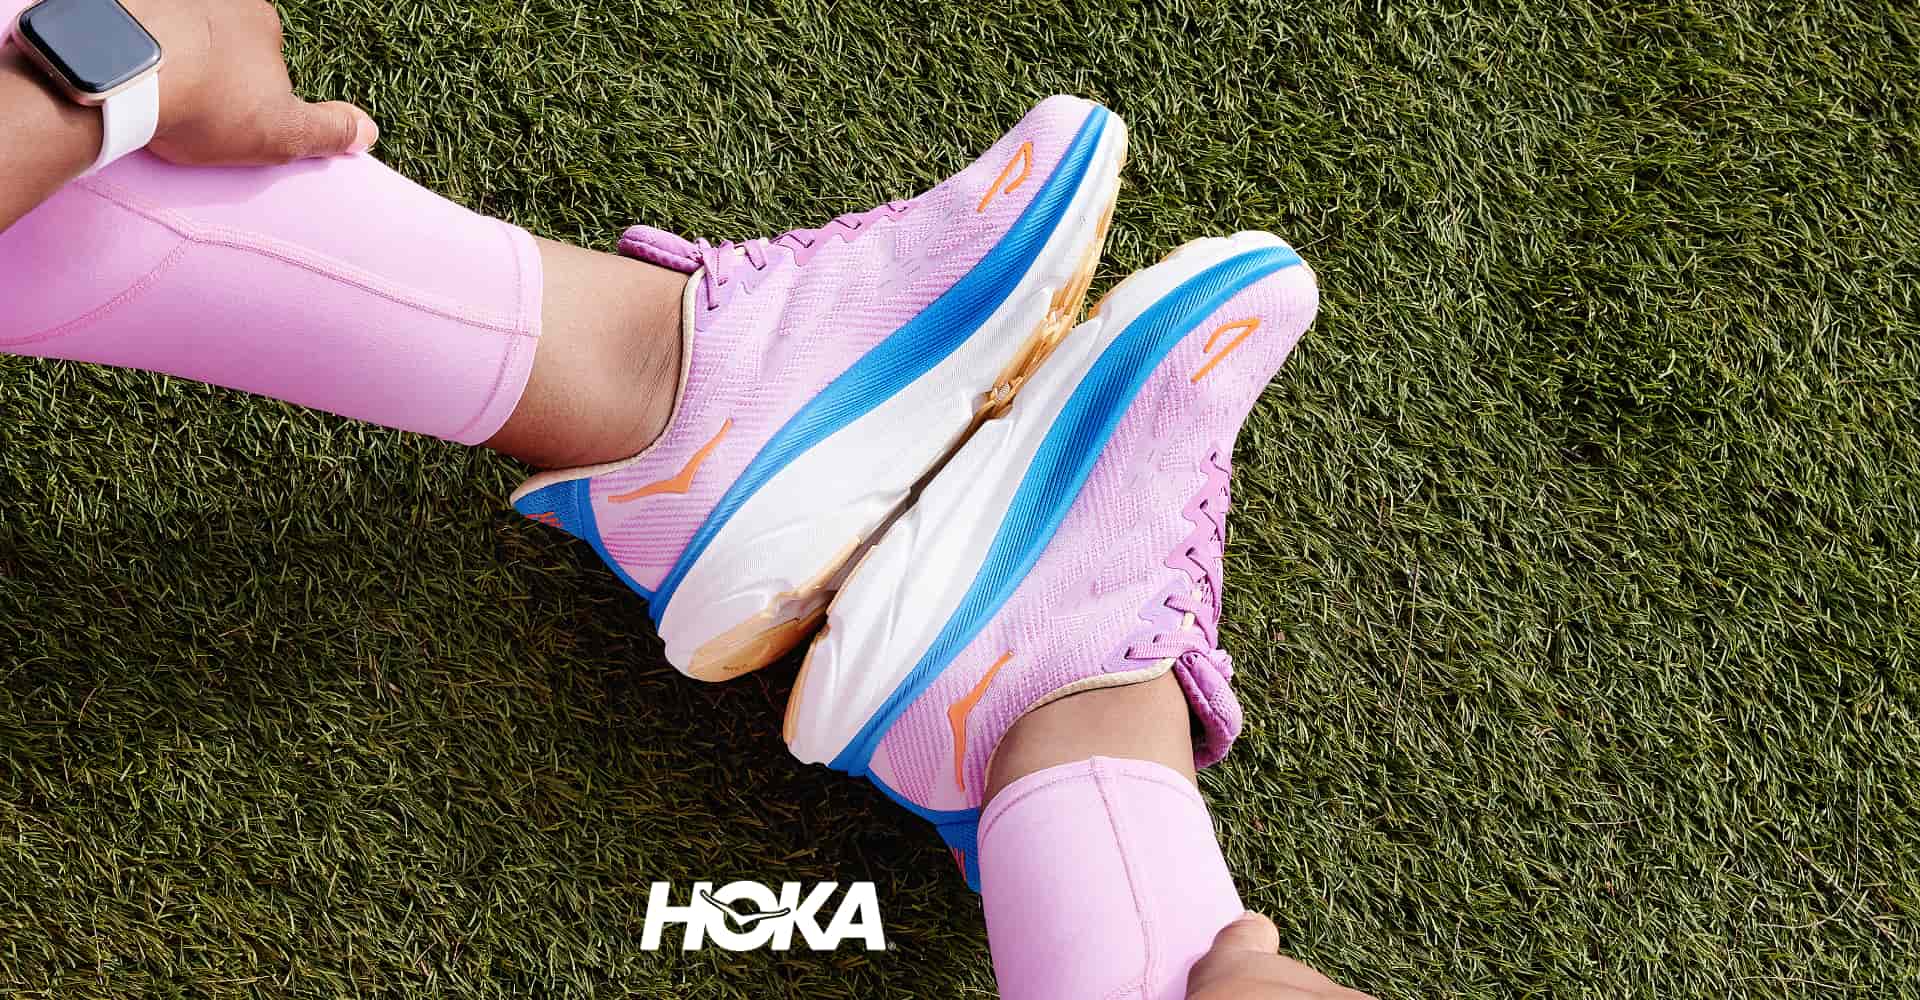 Hoka shoes lifestyle photo